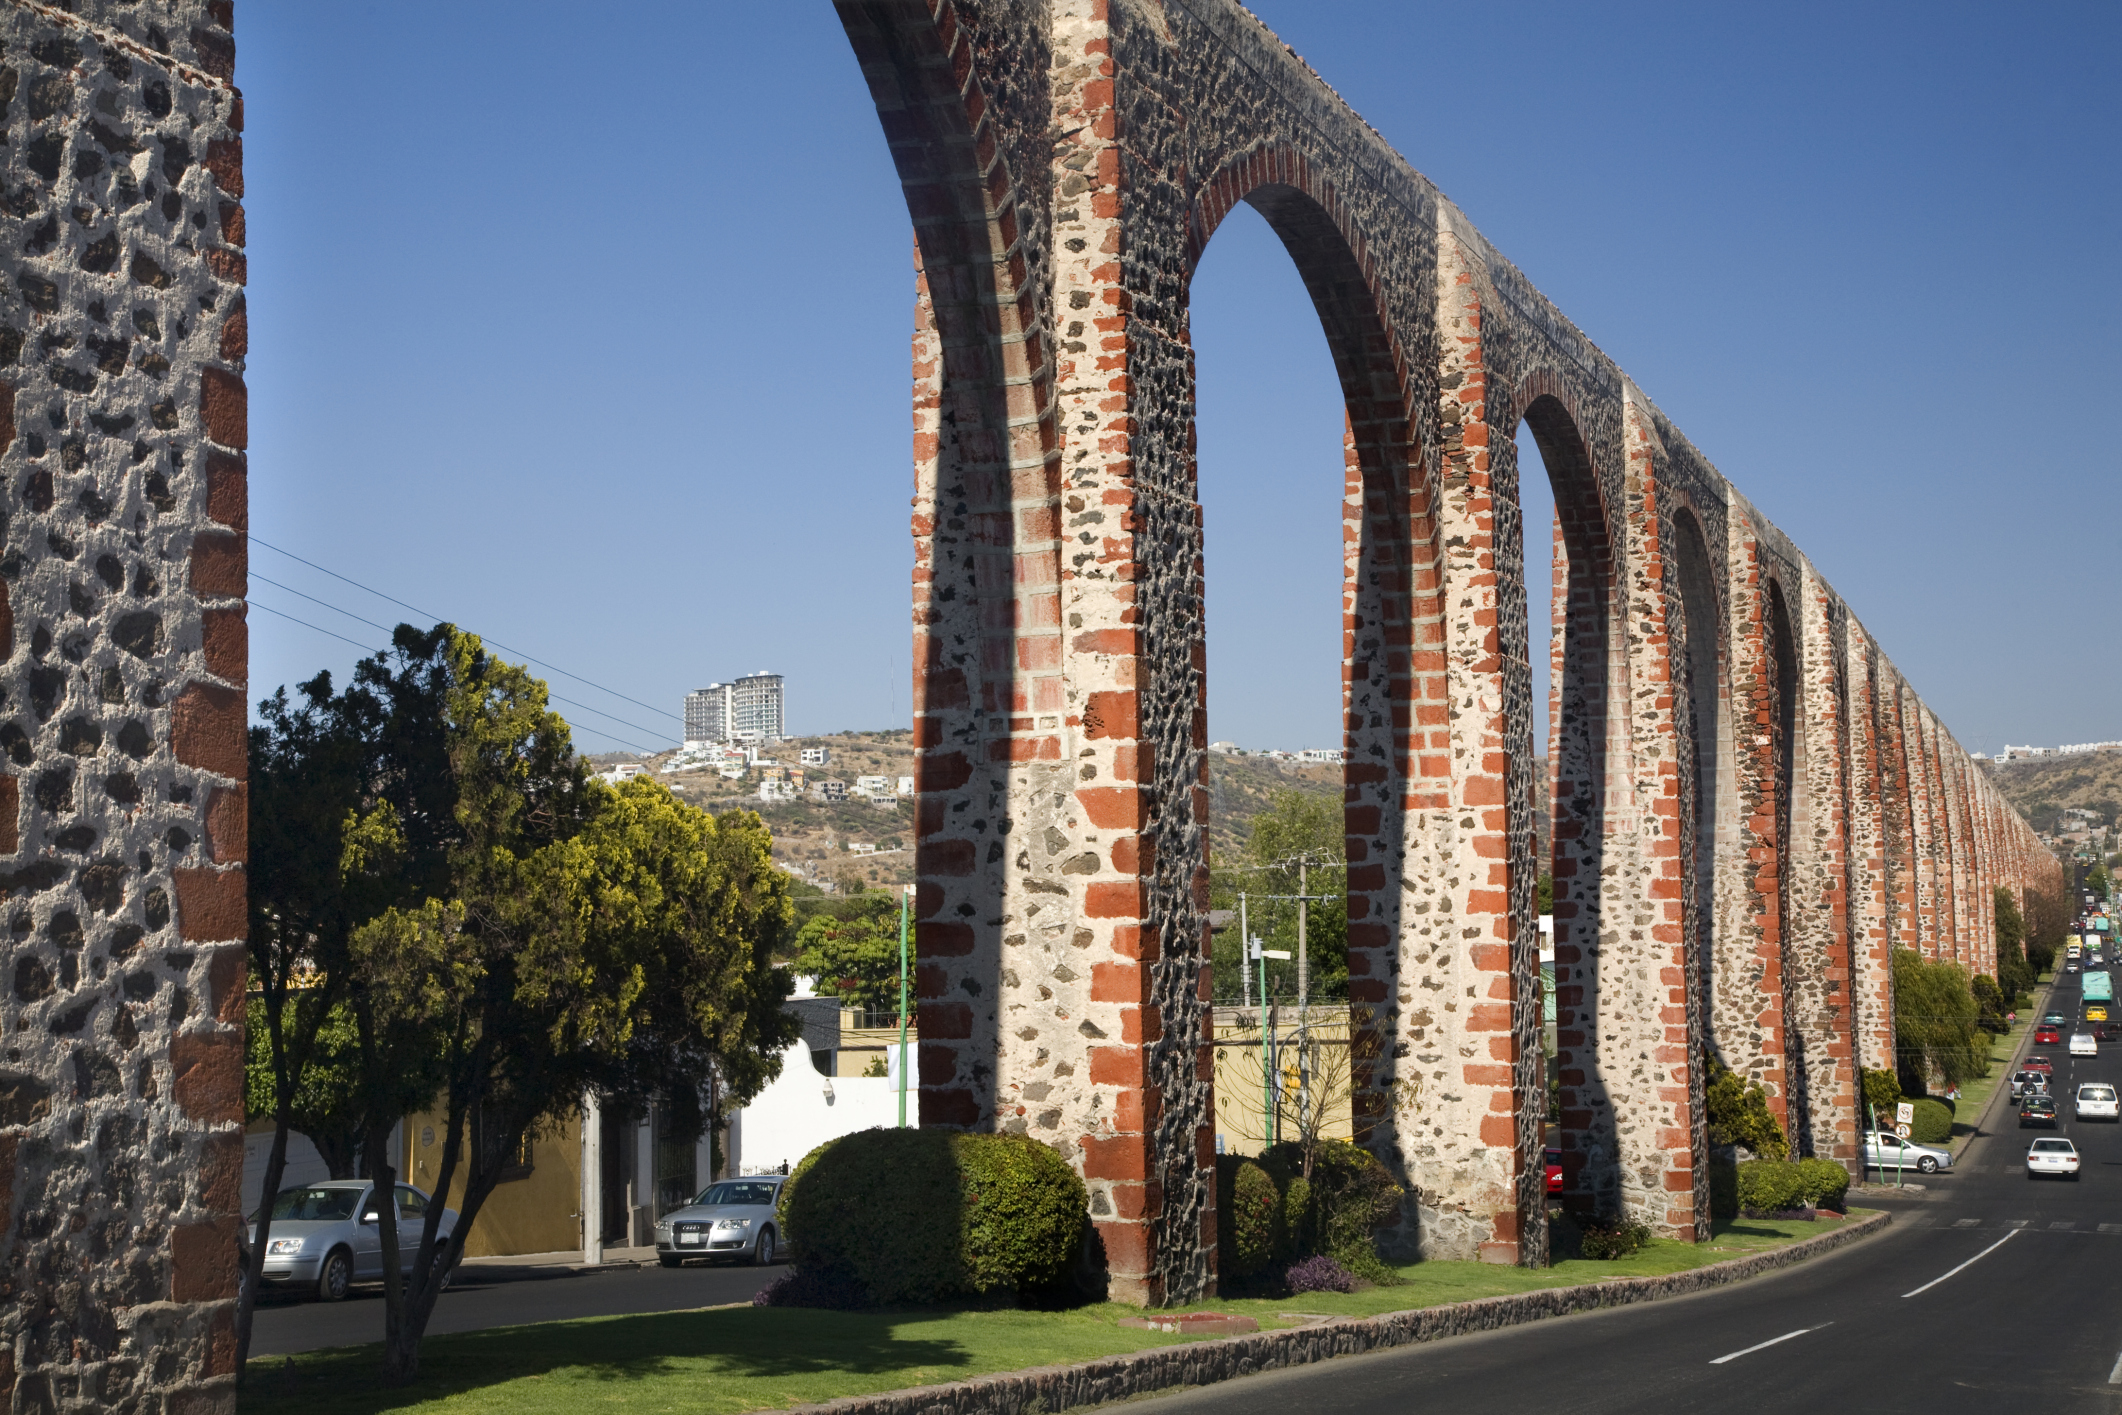  Querétaro será candidata a título de “ciudad creativa de diseño”